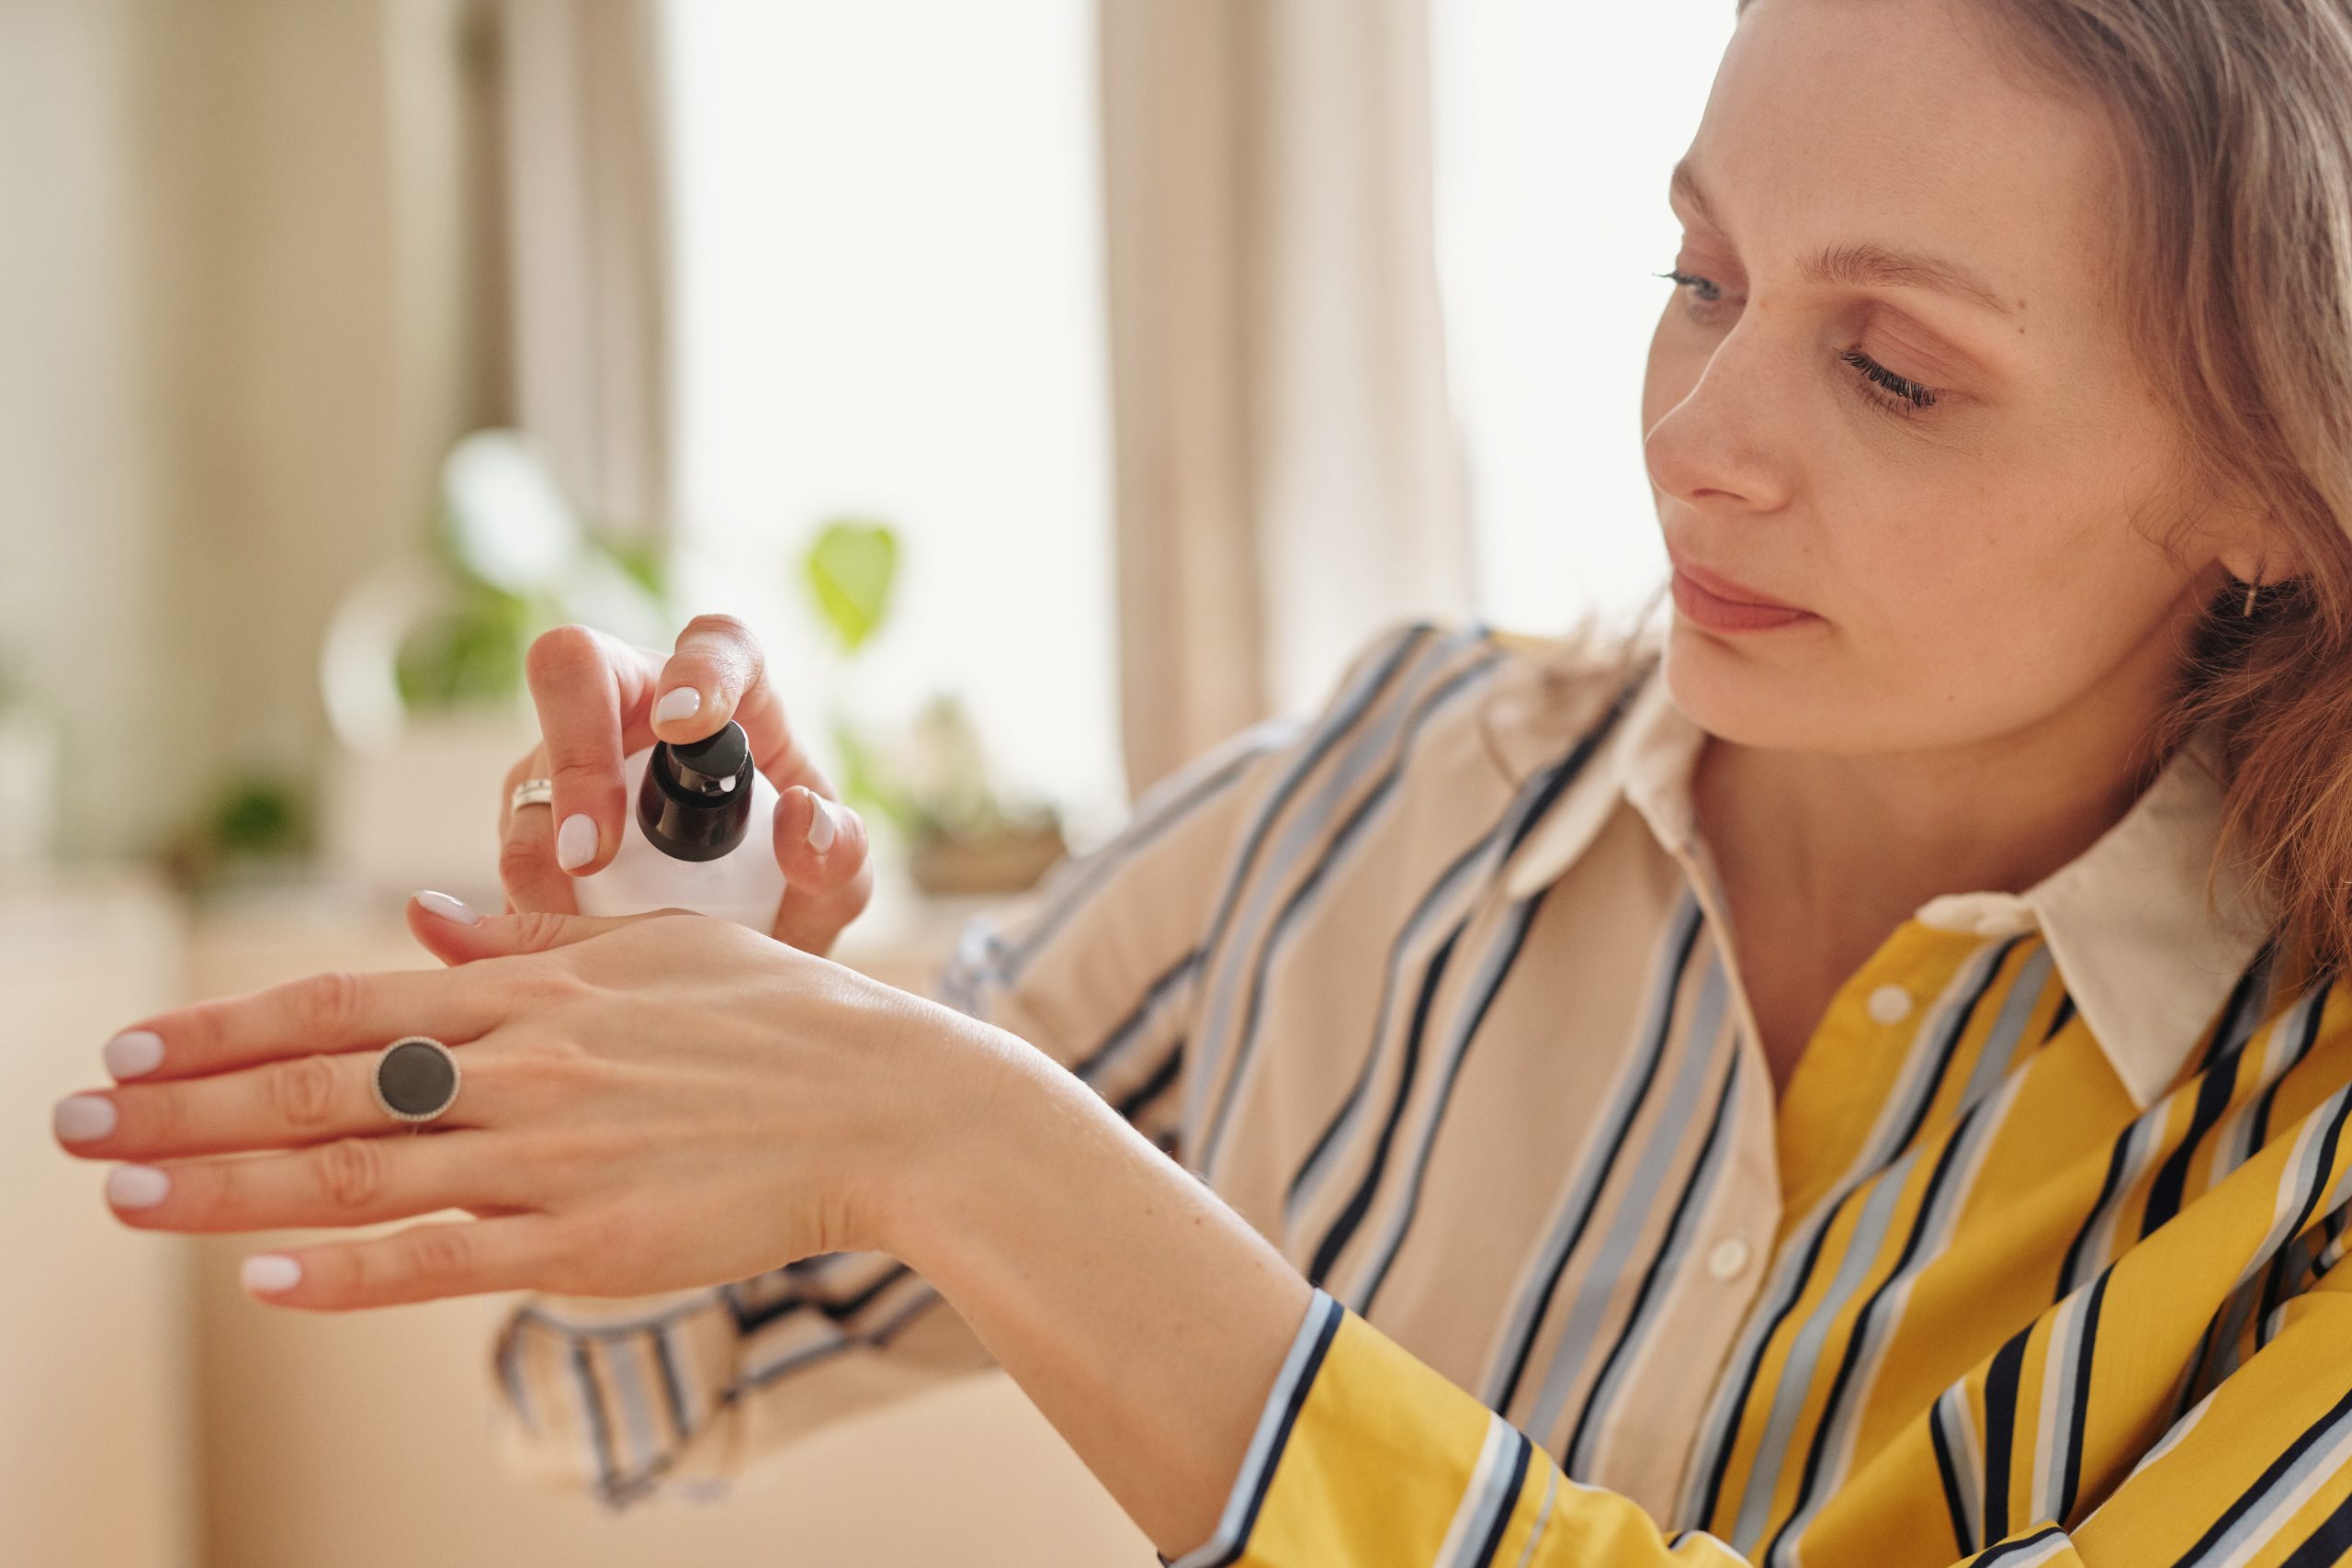 A woman applies moisturiser to her hands during menopause.